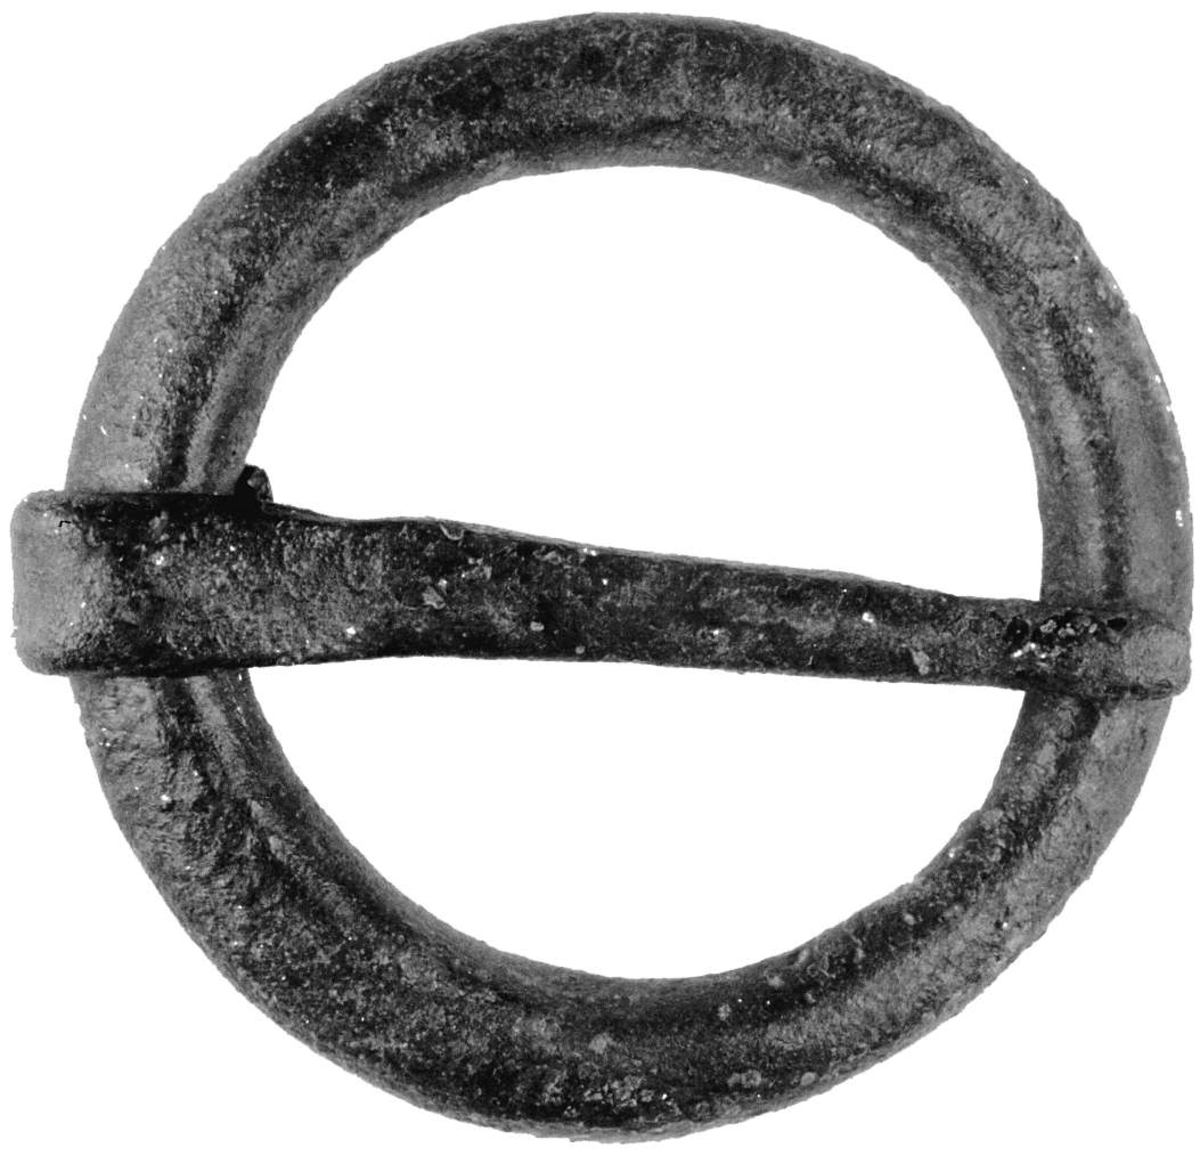 Ringsölja av brons. Tvärsnittet på både ring och nål är U-format och nålen är vikt runt ringen. Saknar urskiljbar ornamentik och kan därför inte dateras.